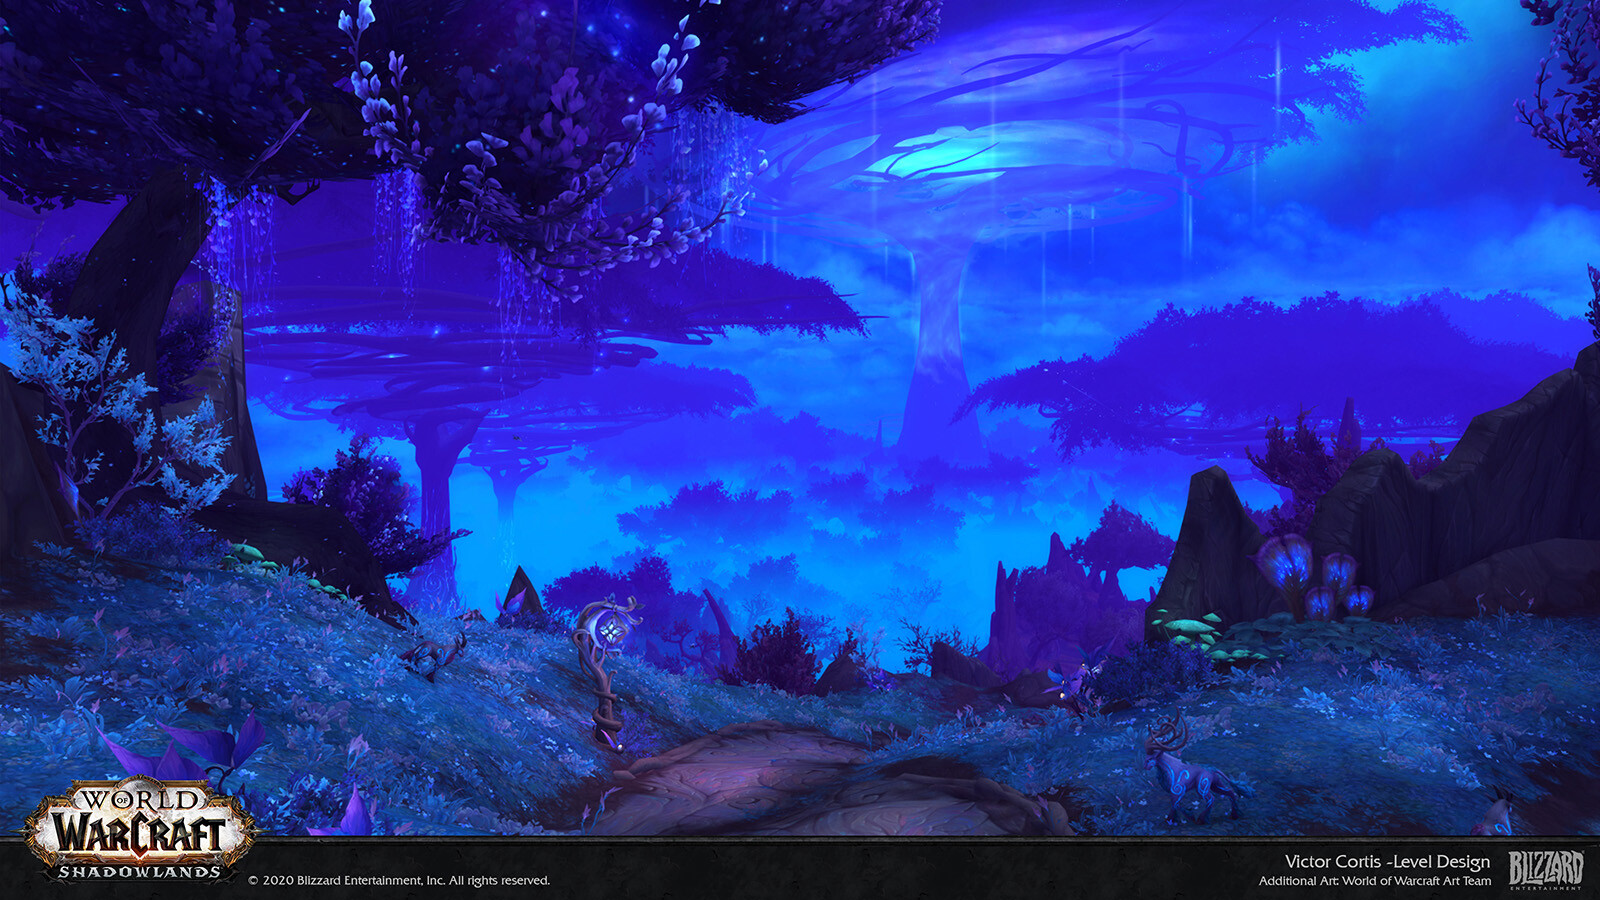 Với trò chơi đình đám World of Warcraft, bạn sẽ khám phá một thế giới kỳ lạ và tuyệt vời. Hãy xem hình chụp liên quan đến từ khóa World of Warcraft để trải nghiệm thế giới mới lạ đó và tìm hiểu thêm về cách mà game có thể giúp bạn thư giãn sau những giờ làm việc căng thẳng.